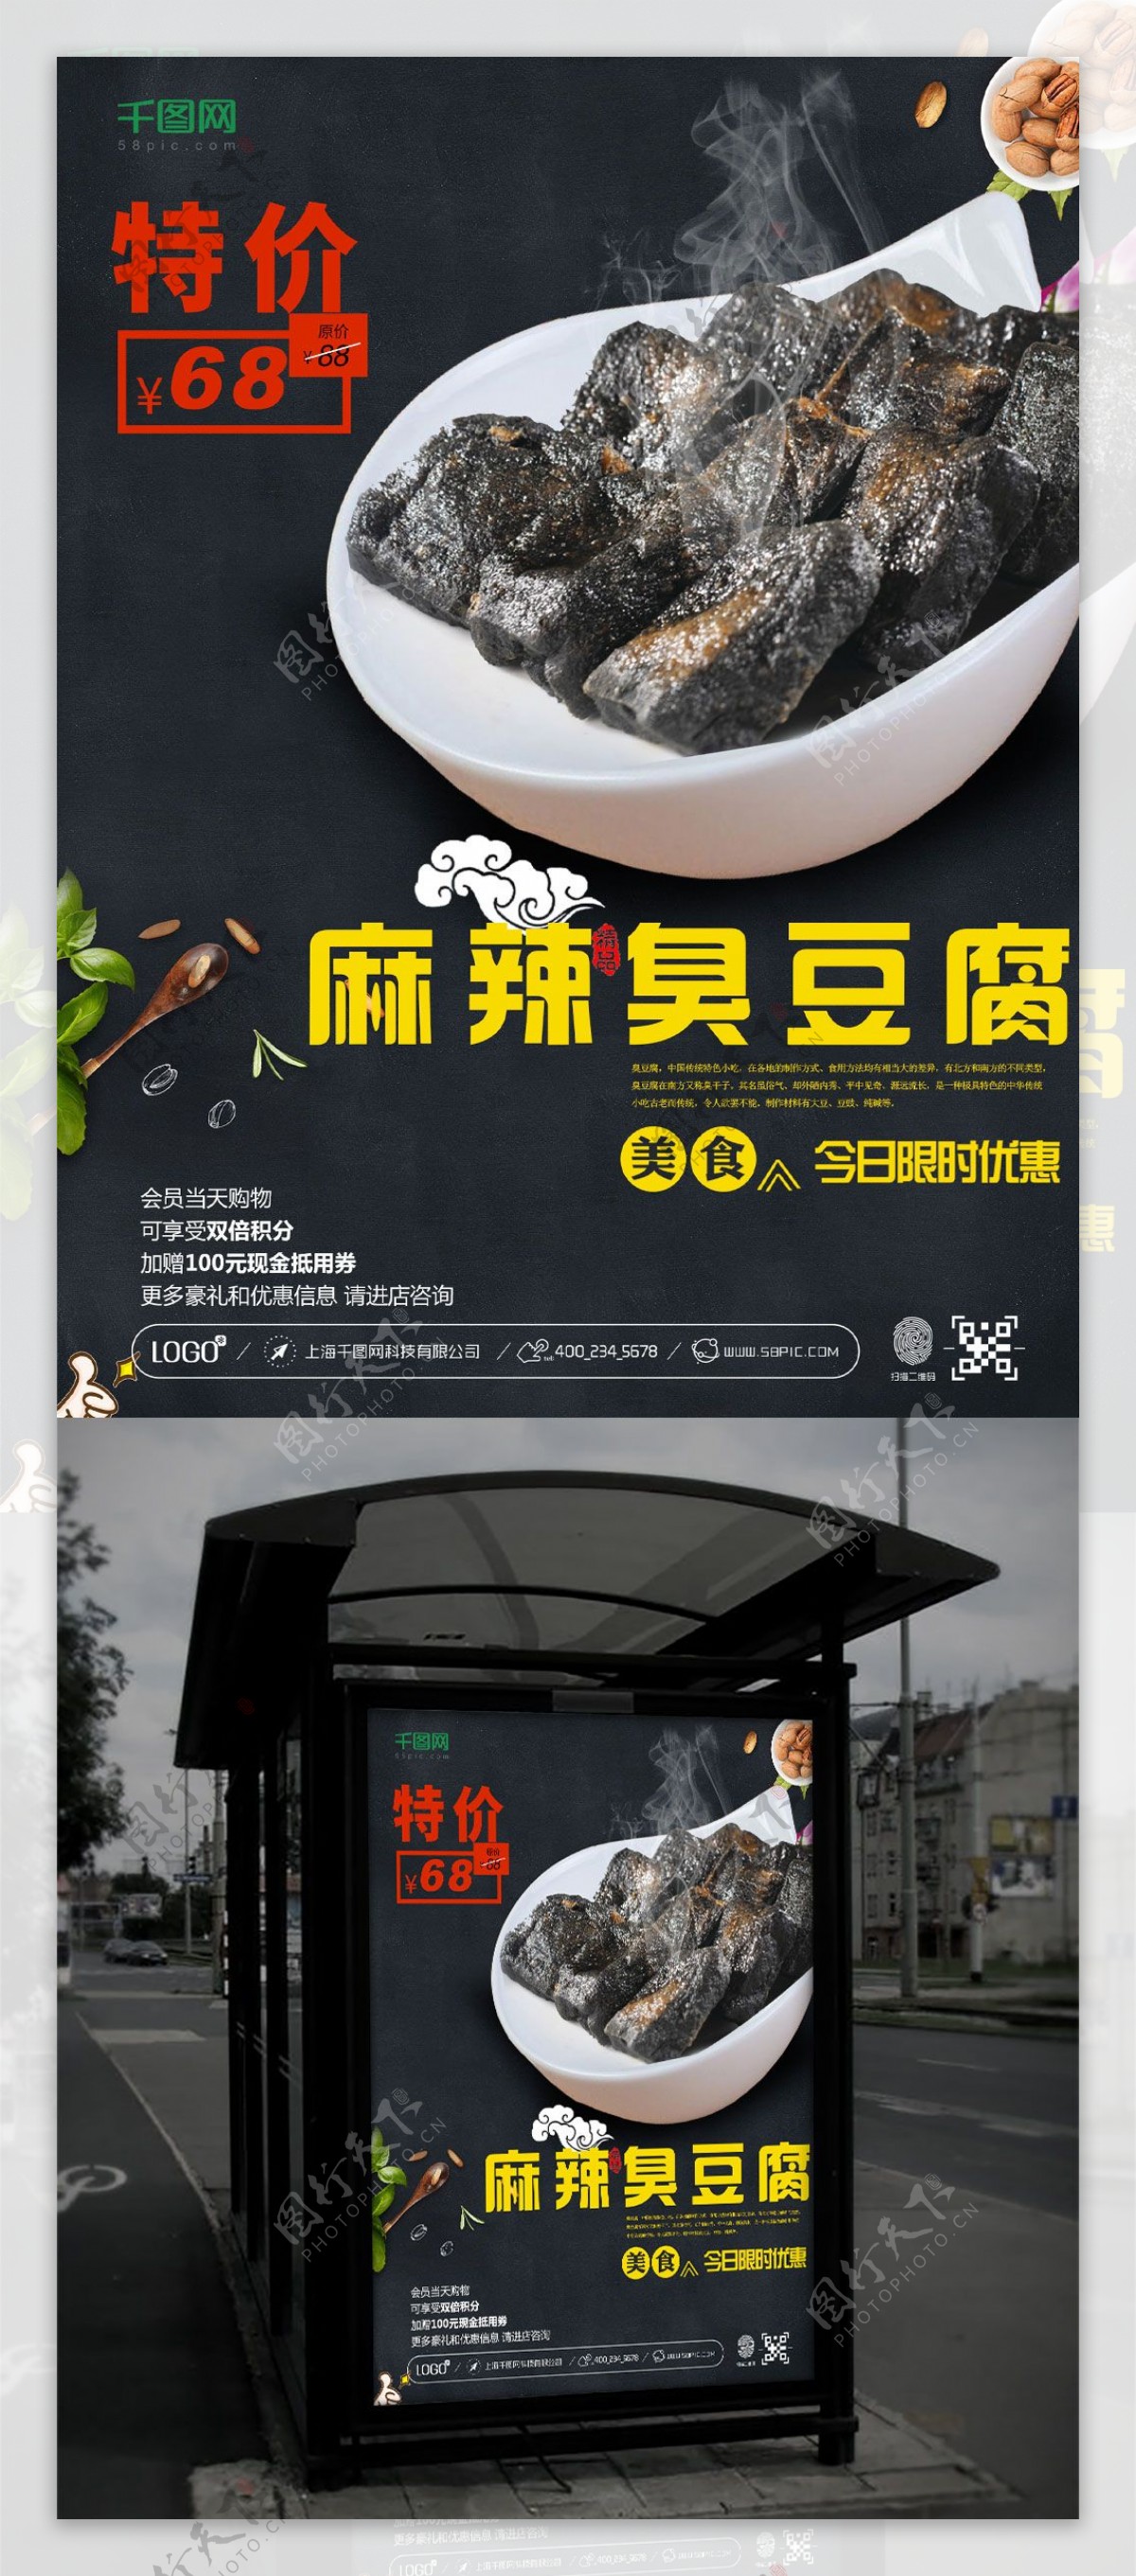 美食湖南特色臭豆腐特价促销写实风格海报